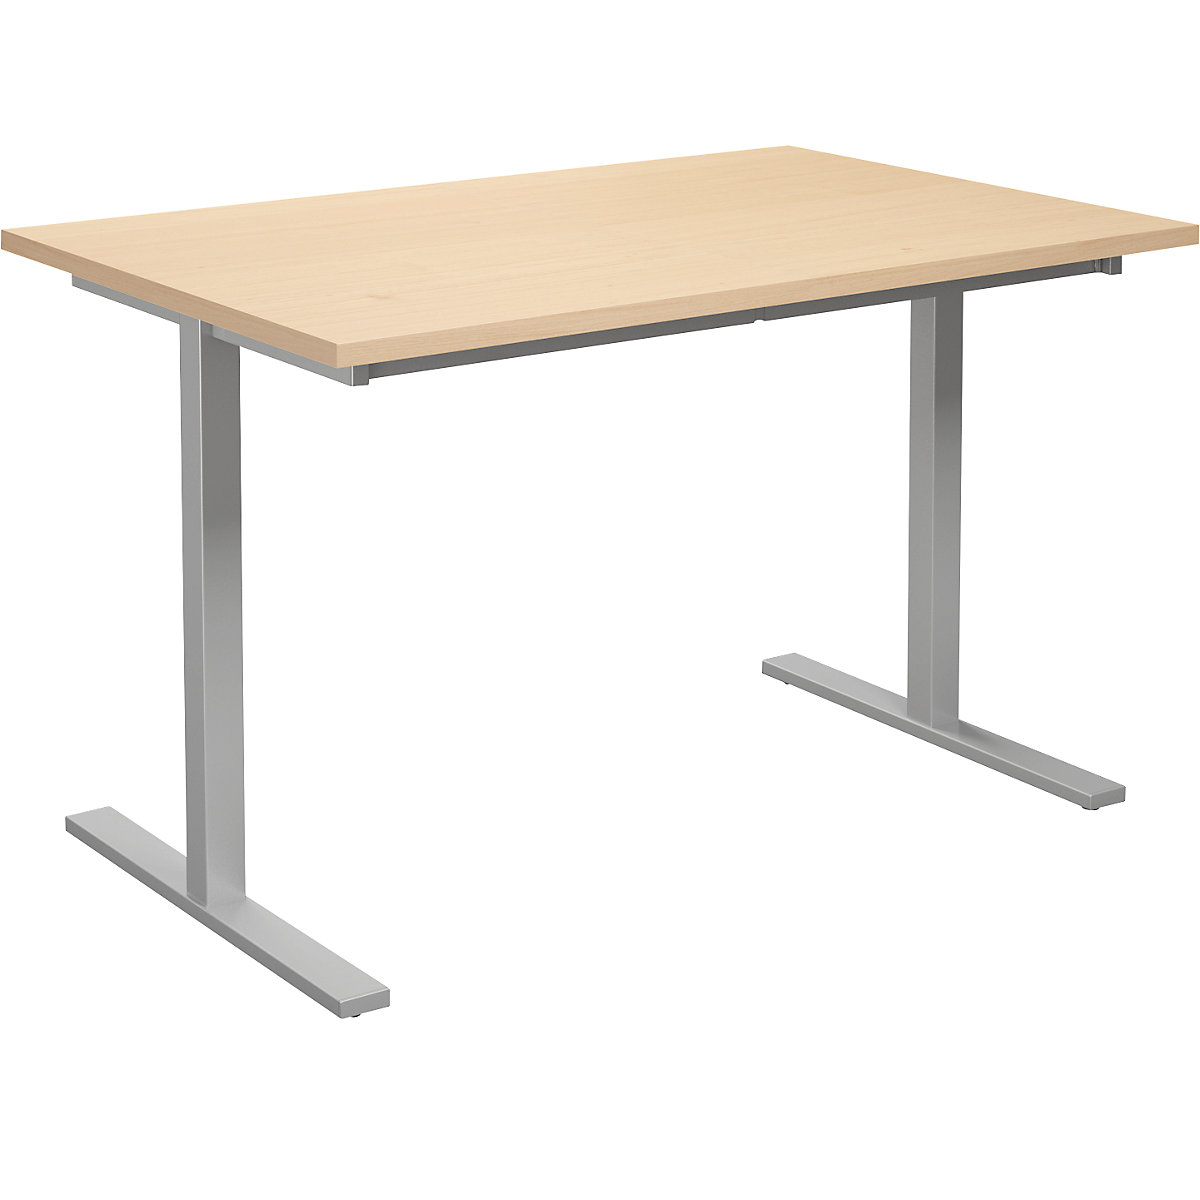 DUO-T multi-purpose desk, straight tabletop